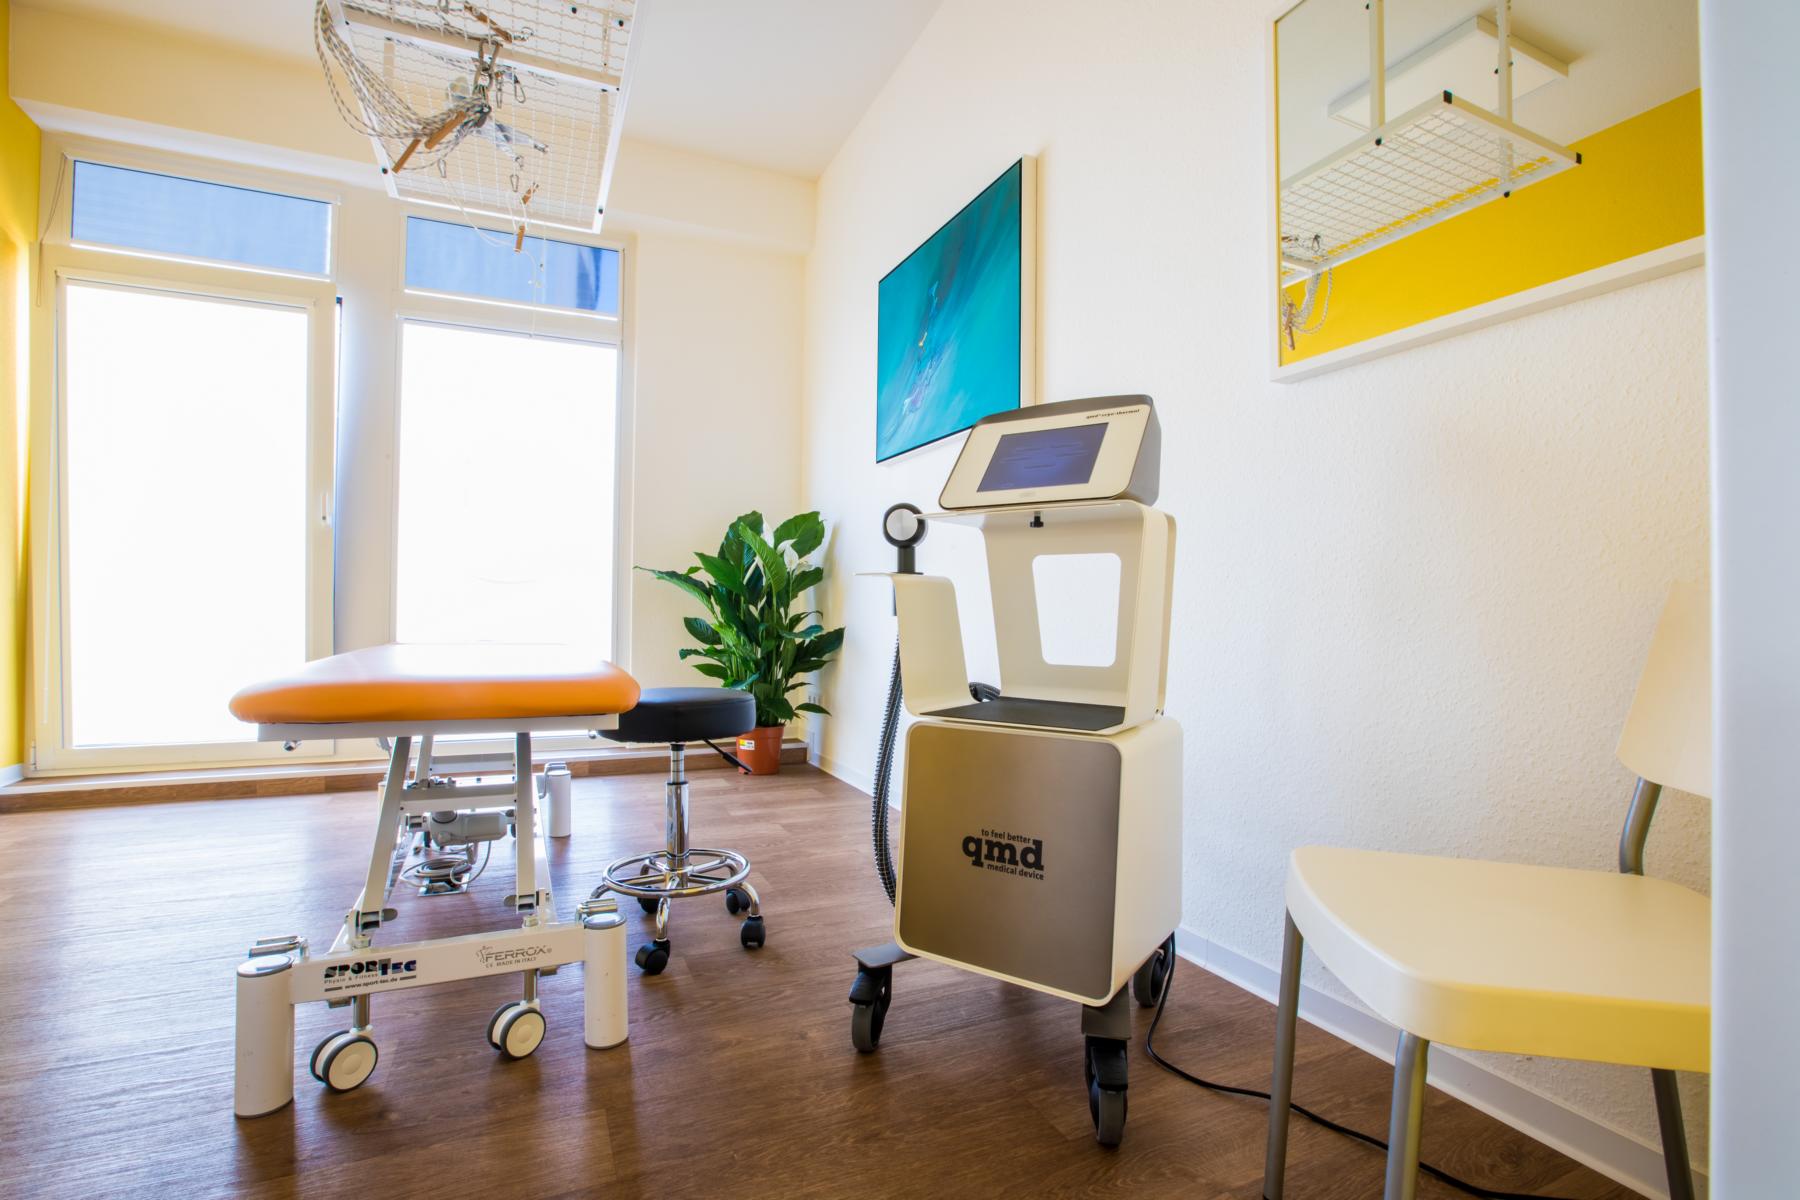 nsere Behandlugnsräume verfügen neben den klassischen Physiotherapie Geräten auch neueste Medizintechnik wie bspw. das QMD zur Behandlung diverser Beschwerden.